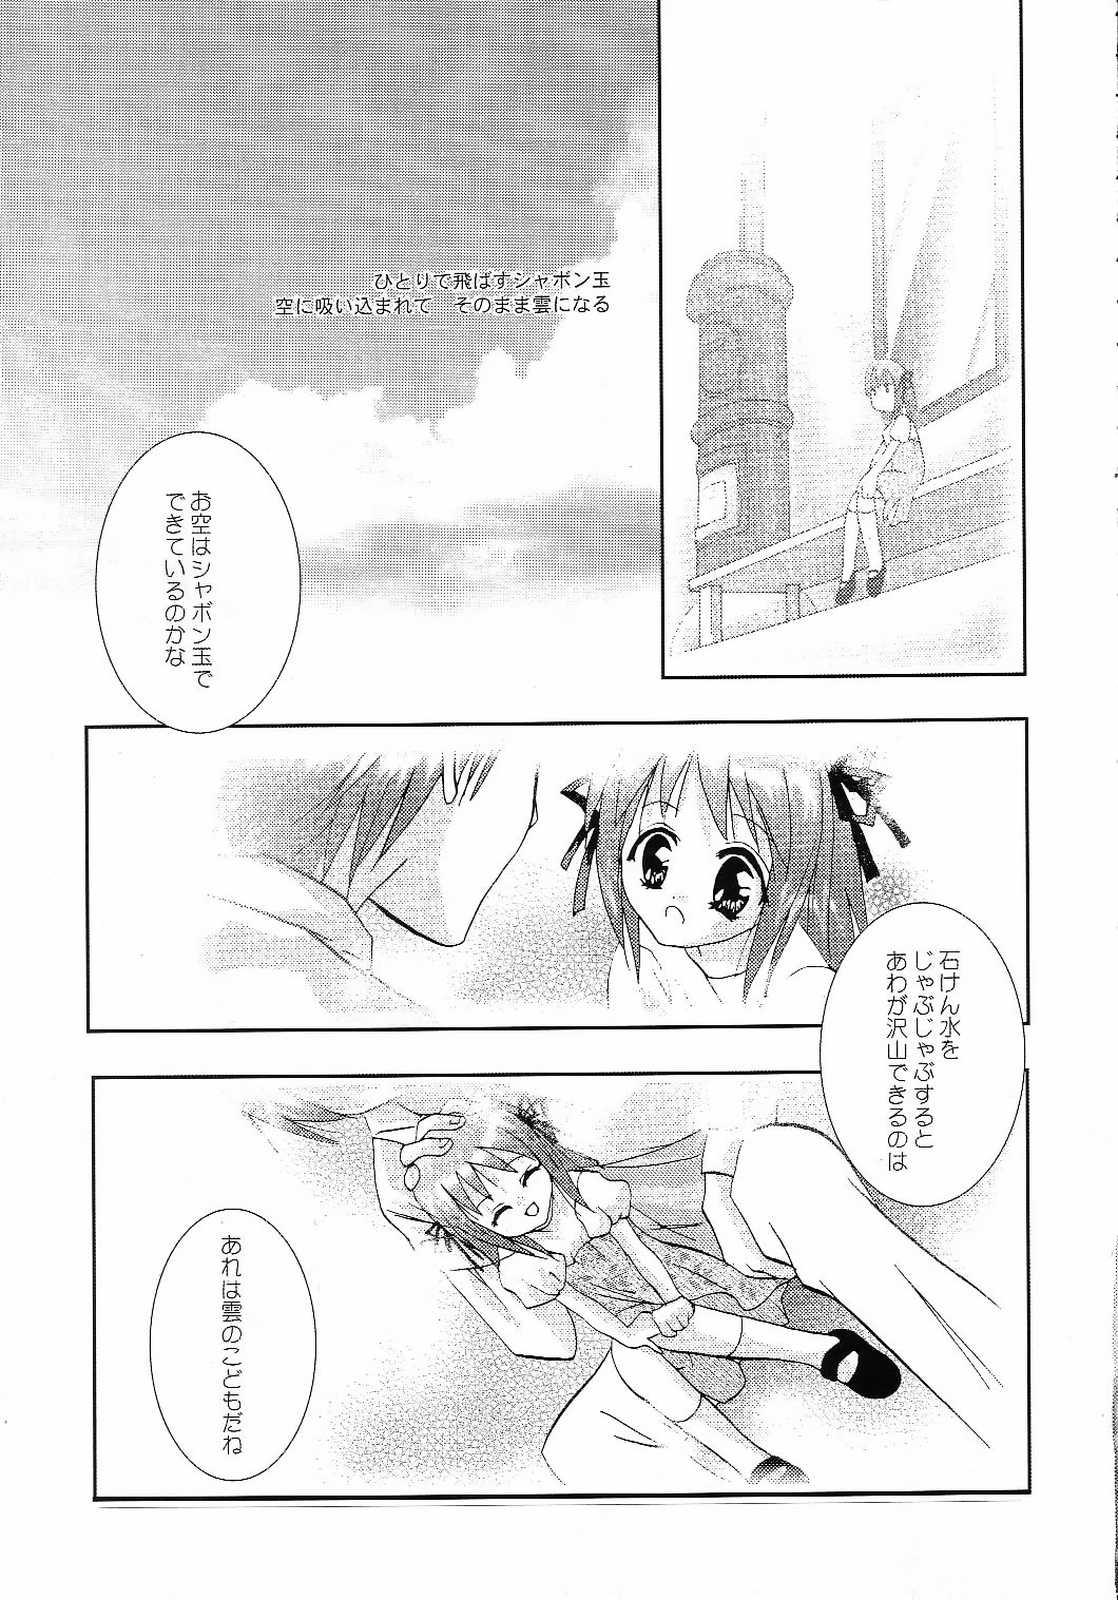 4some AQUAMARINE Shinkai no Tsuki - Air Buceta - Page 8